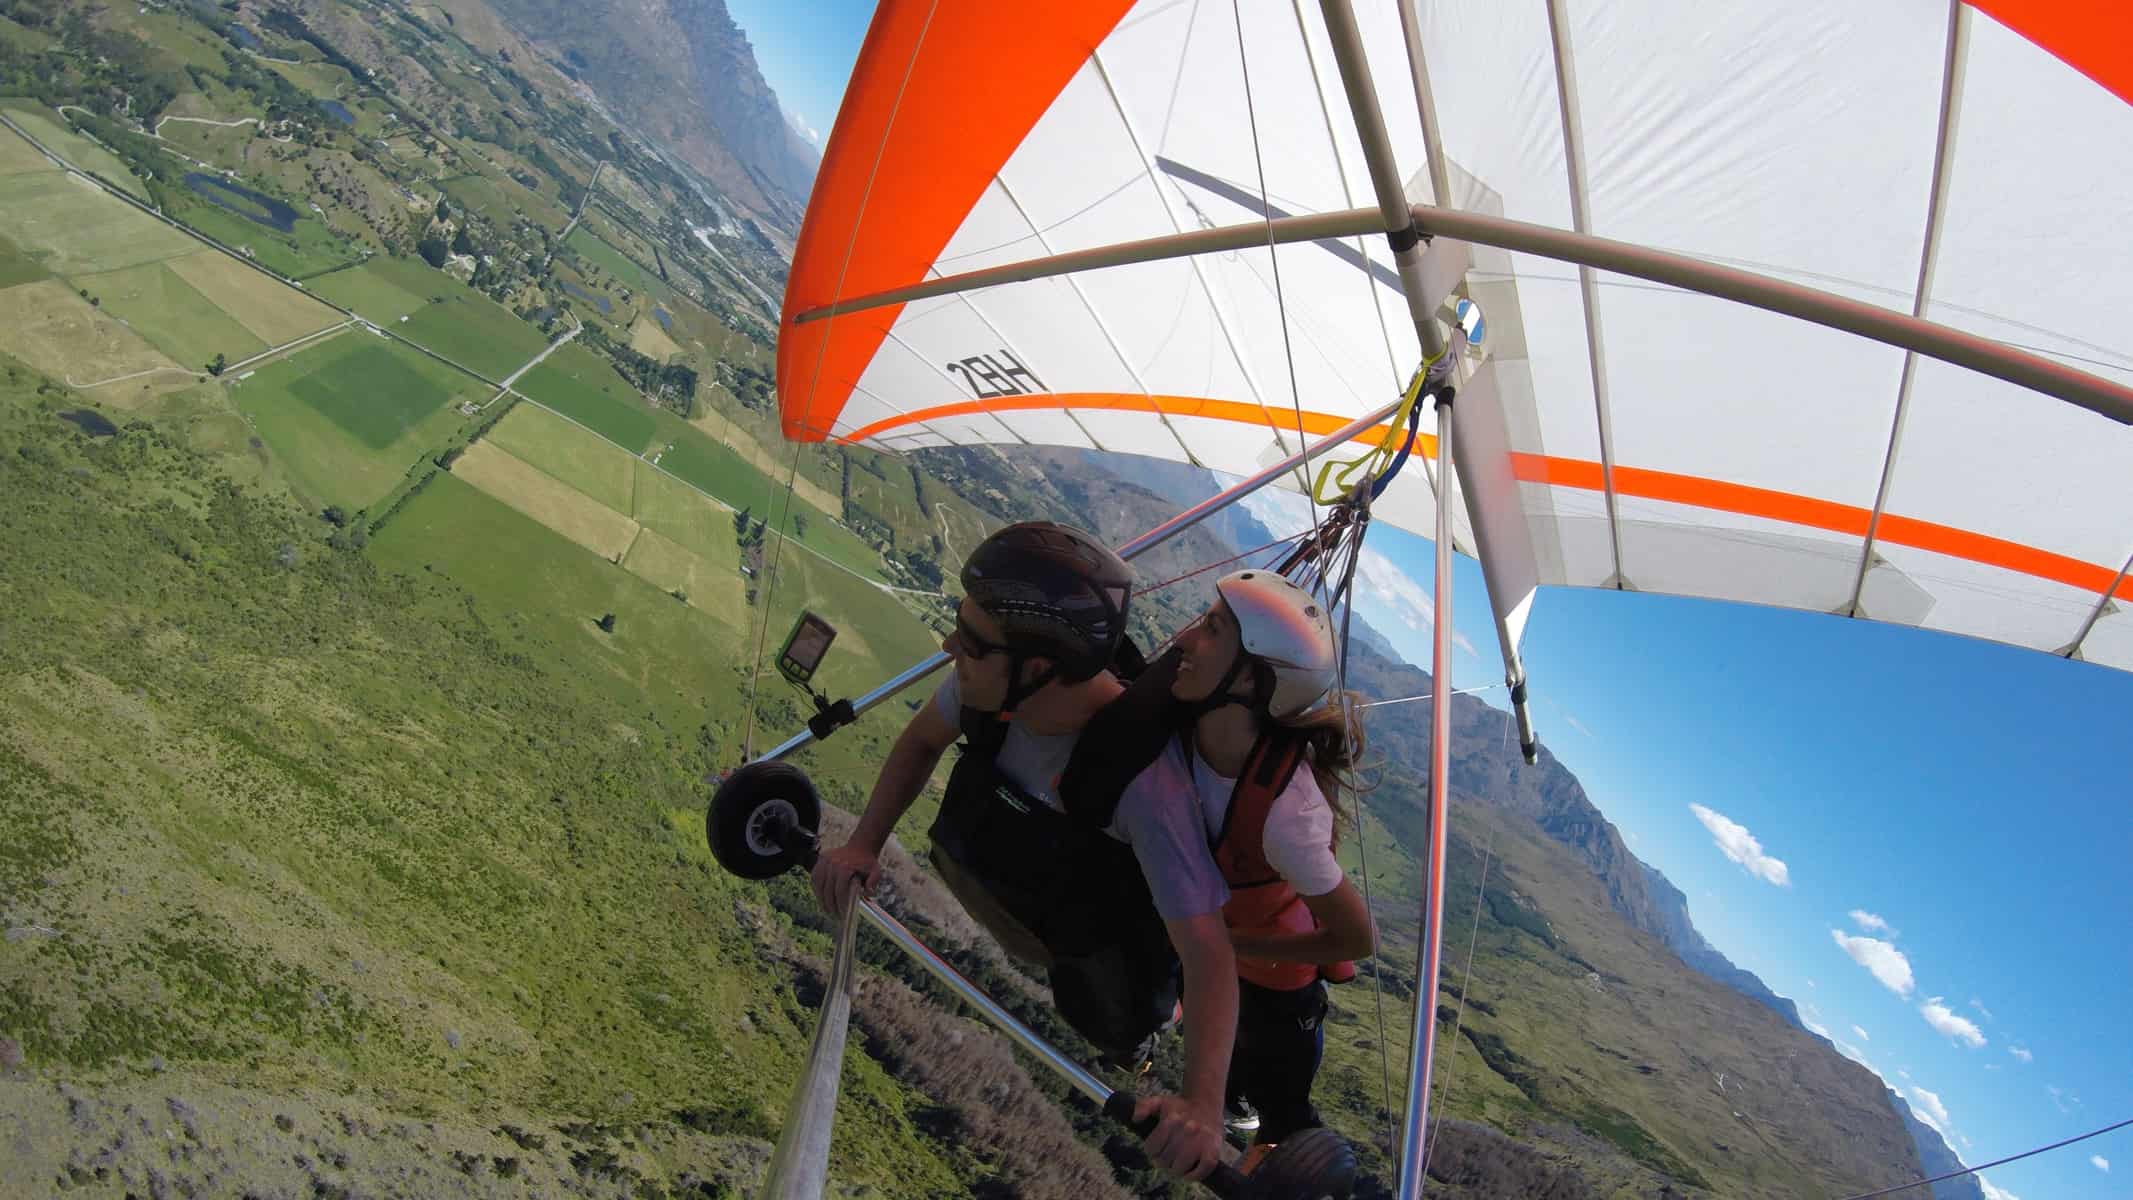 Hang gliding around Coronet Peak